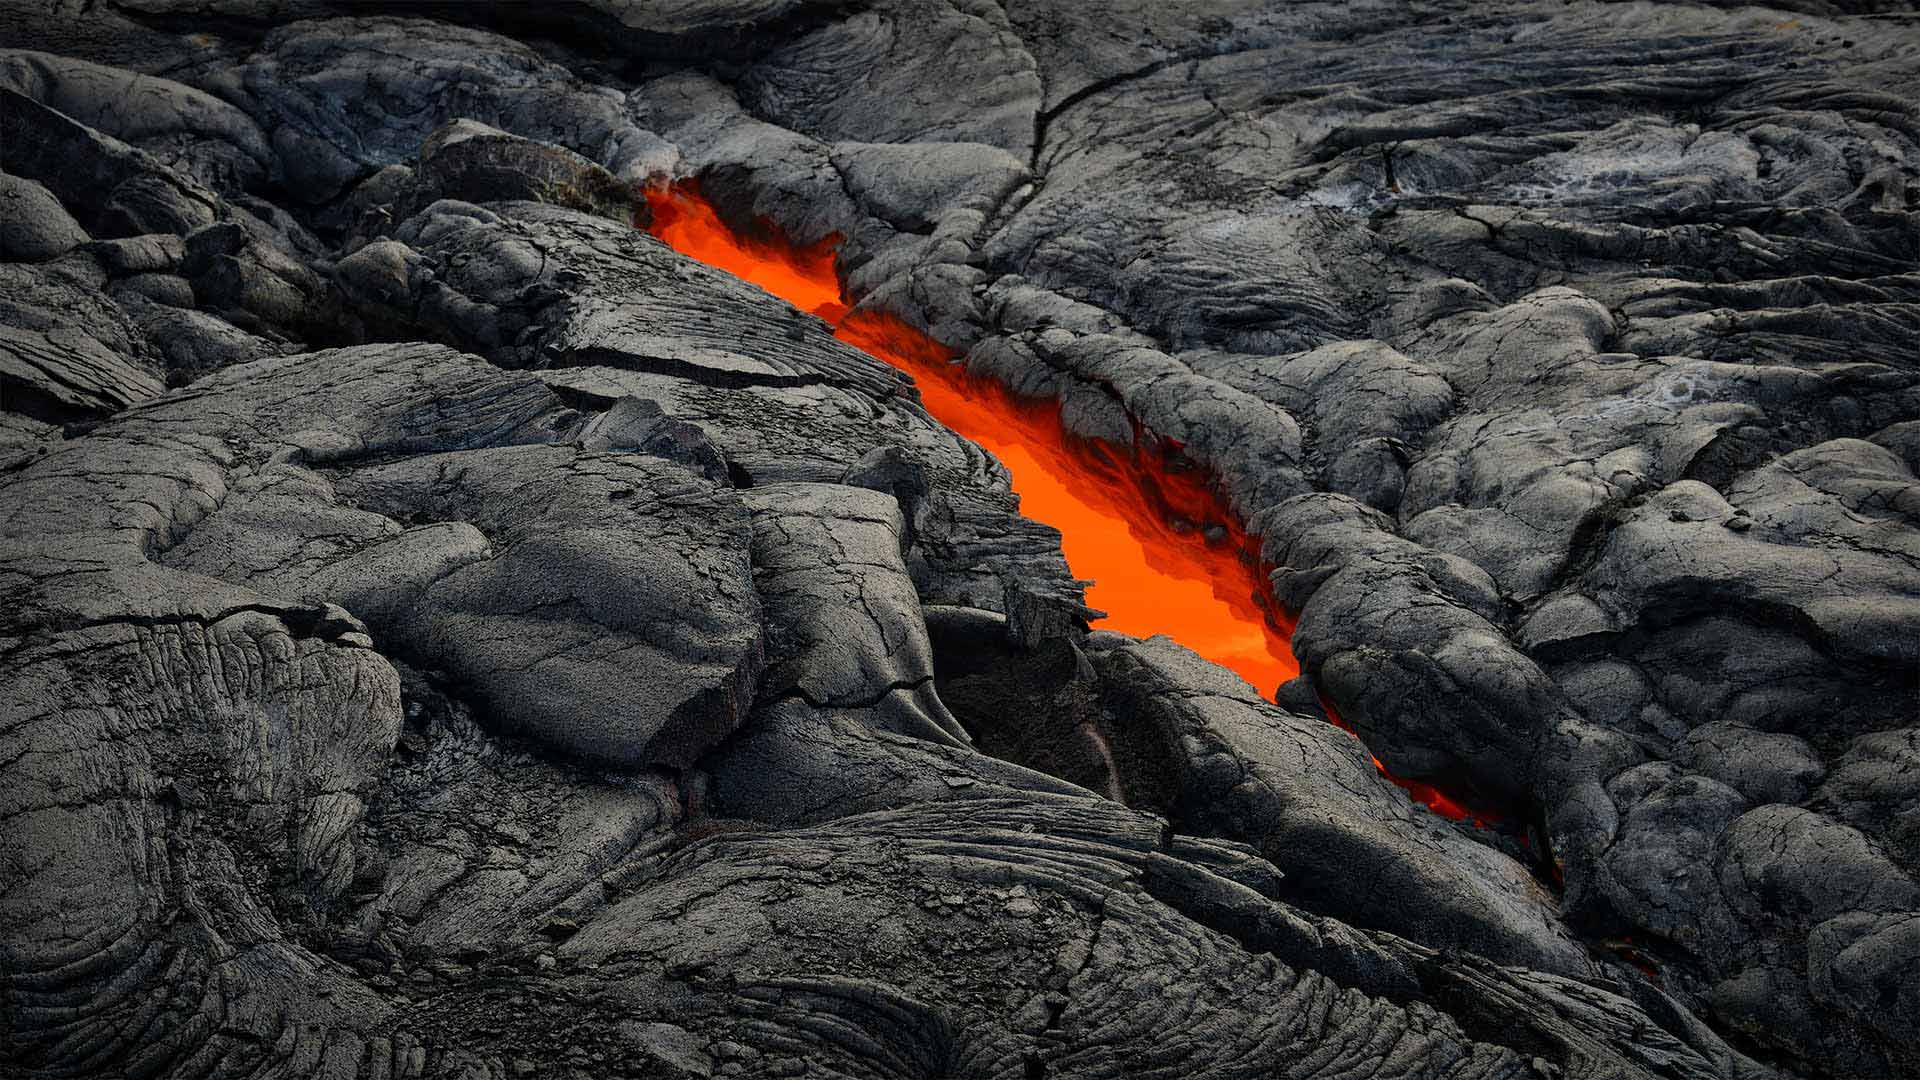 Hawai i Volcanoes National Park at 106